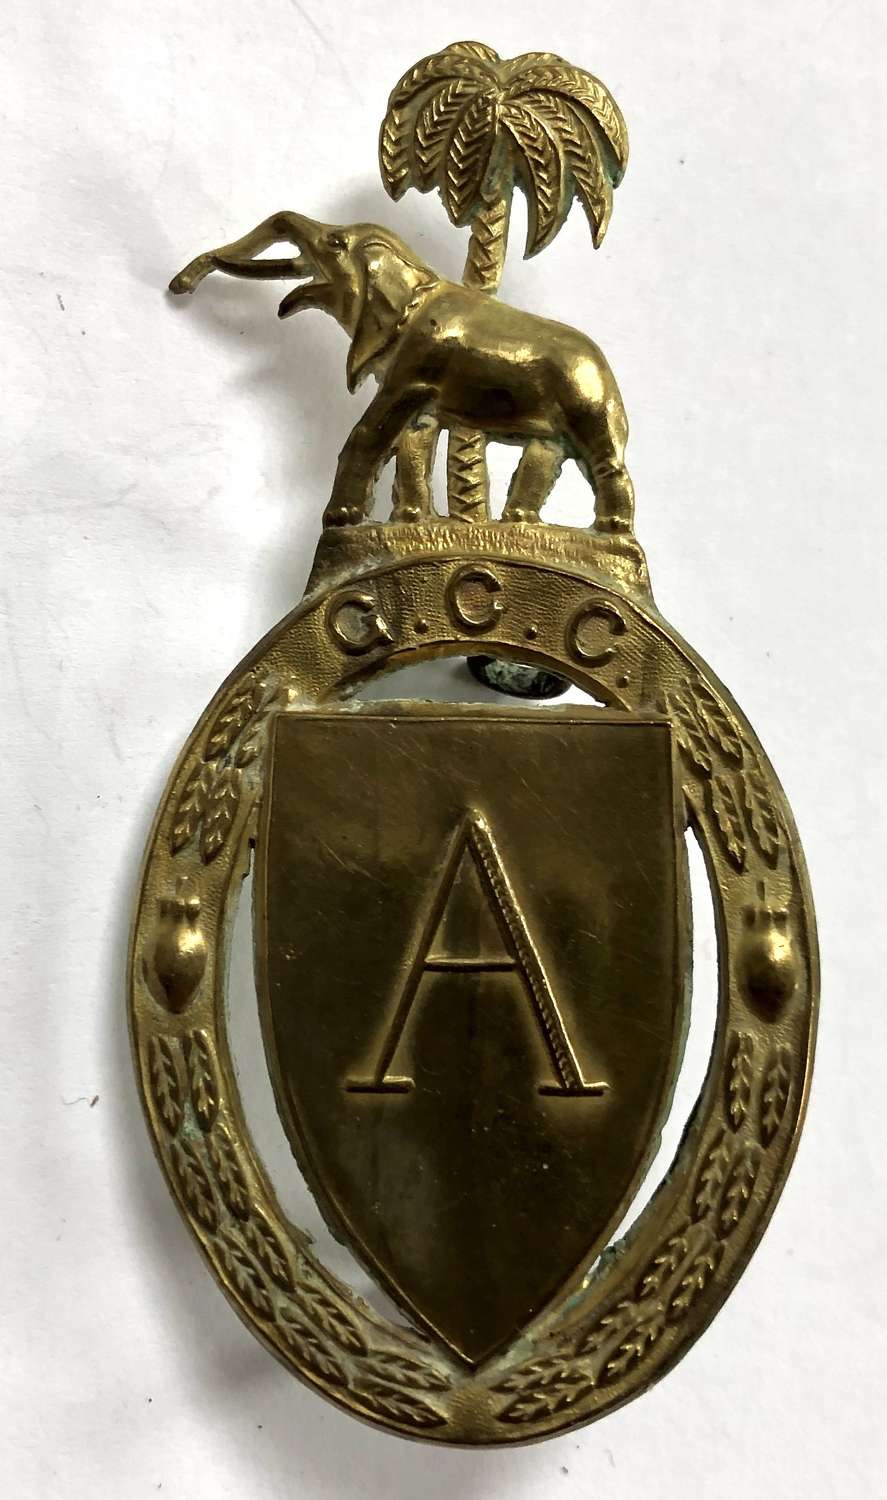 Gold Coast Cadets brass cap badge